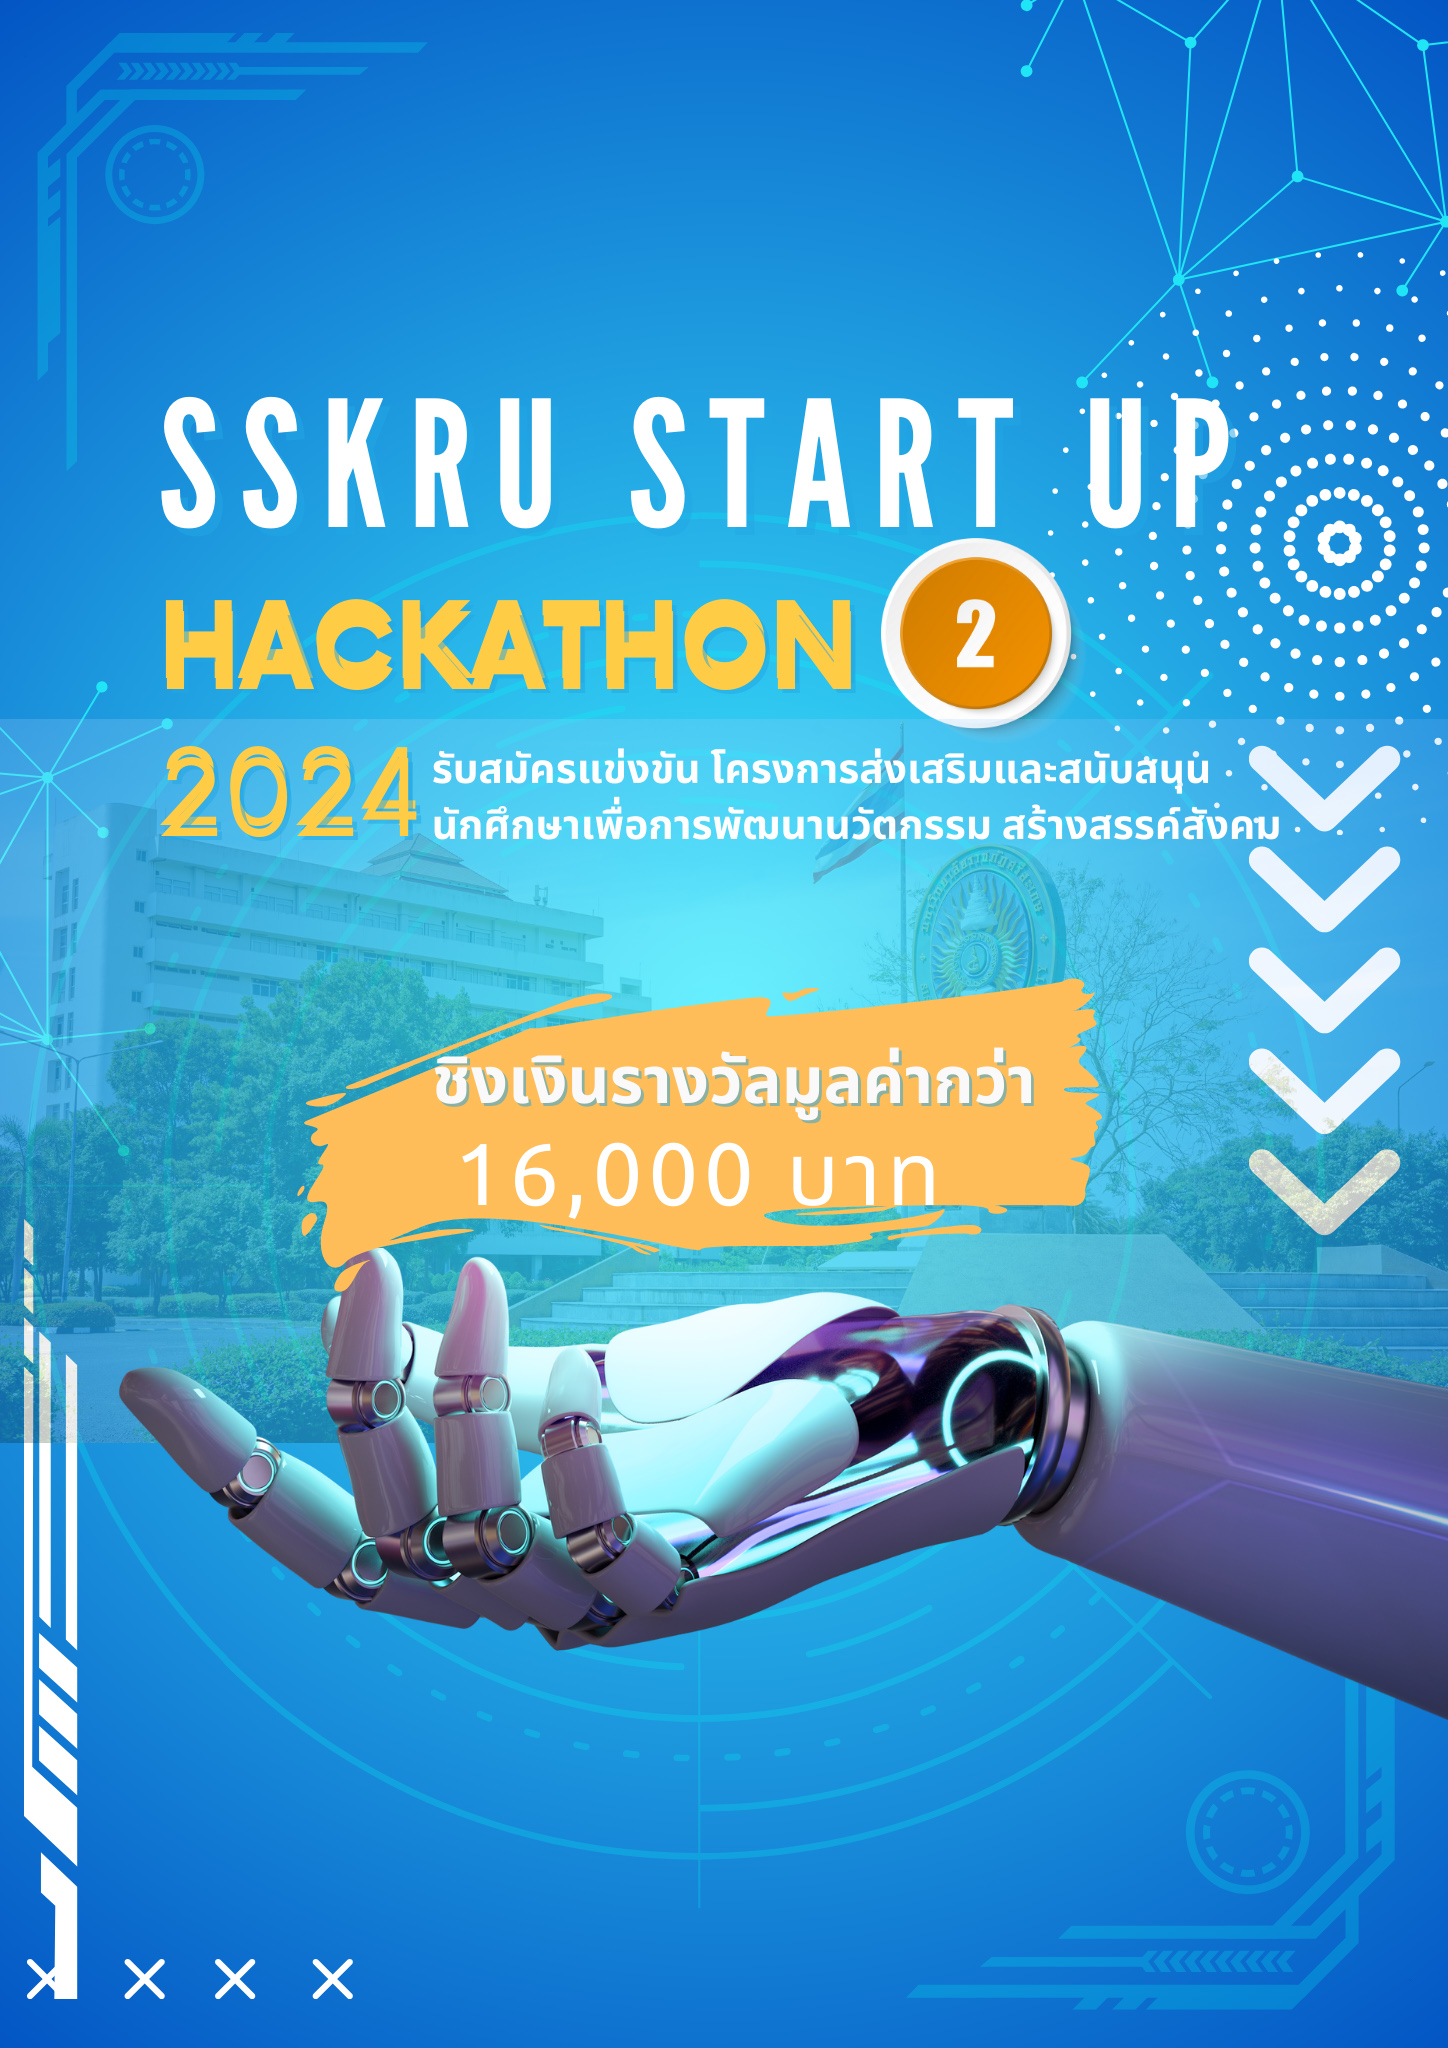 SSKRU hackathon 2024 – 1